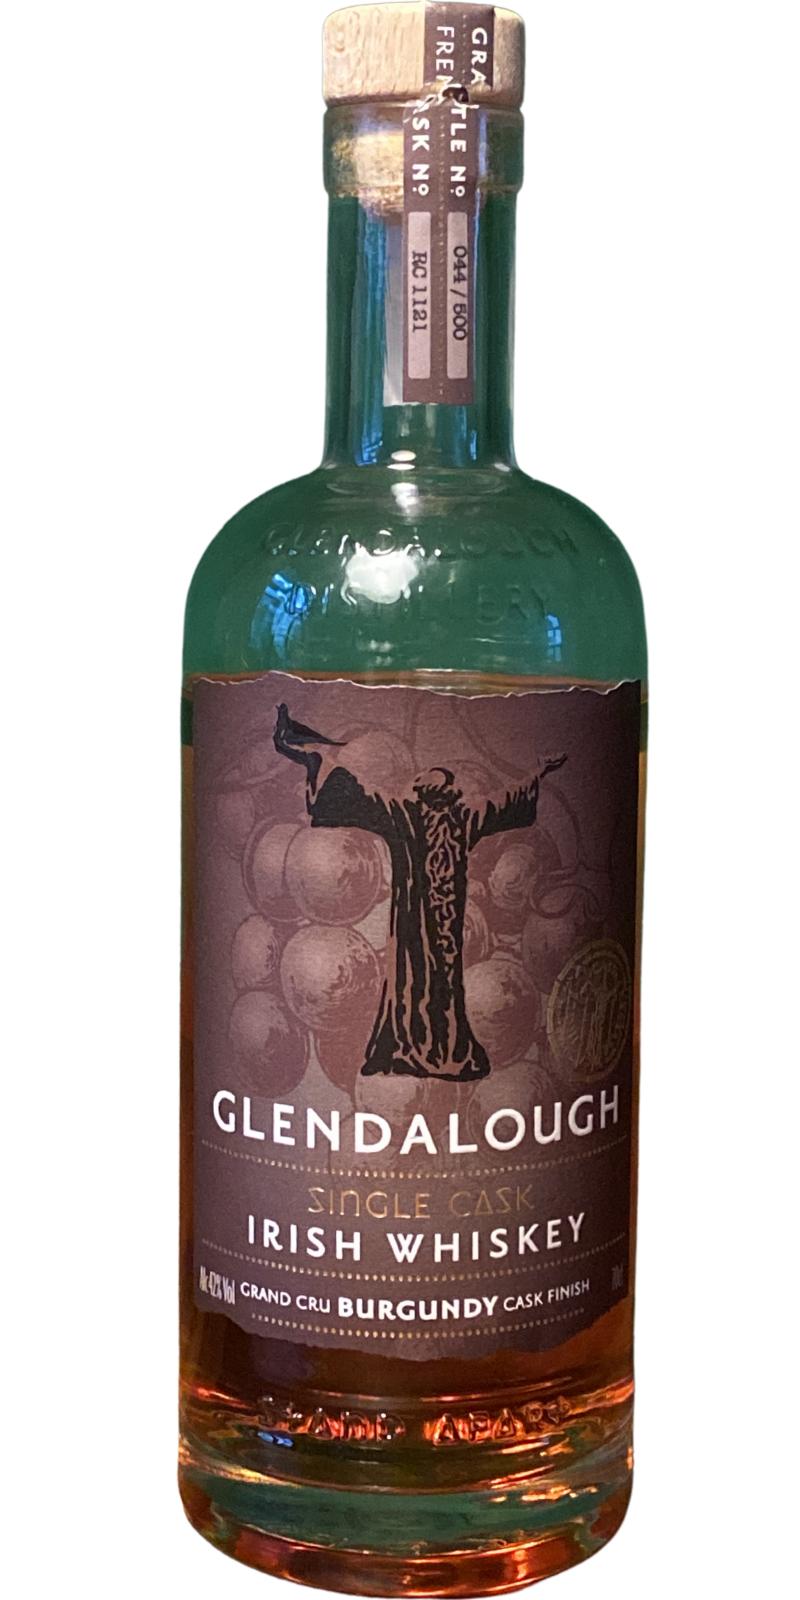 Glendalough Grand Cru Burgundy Cask Finish